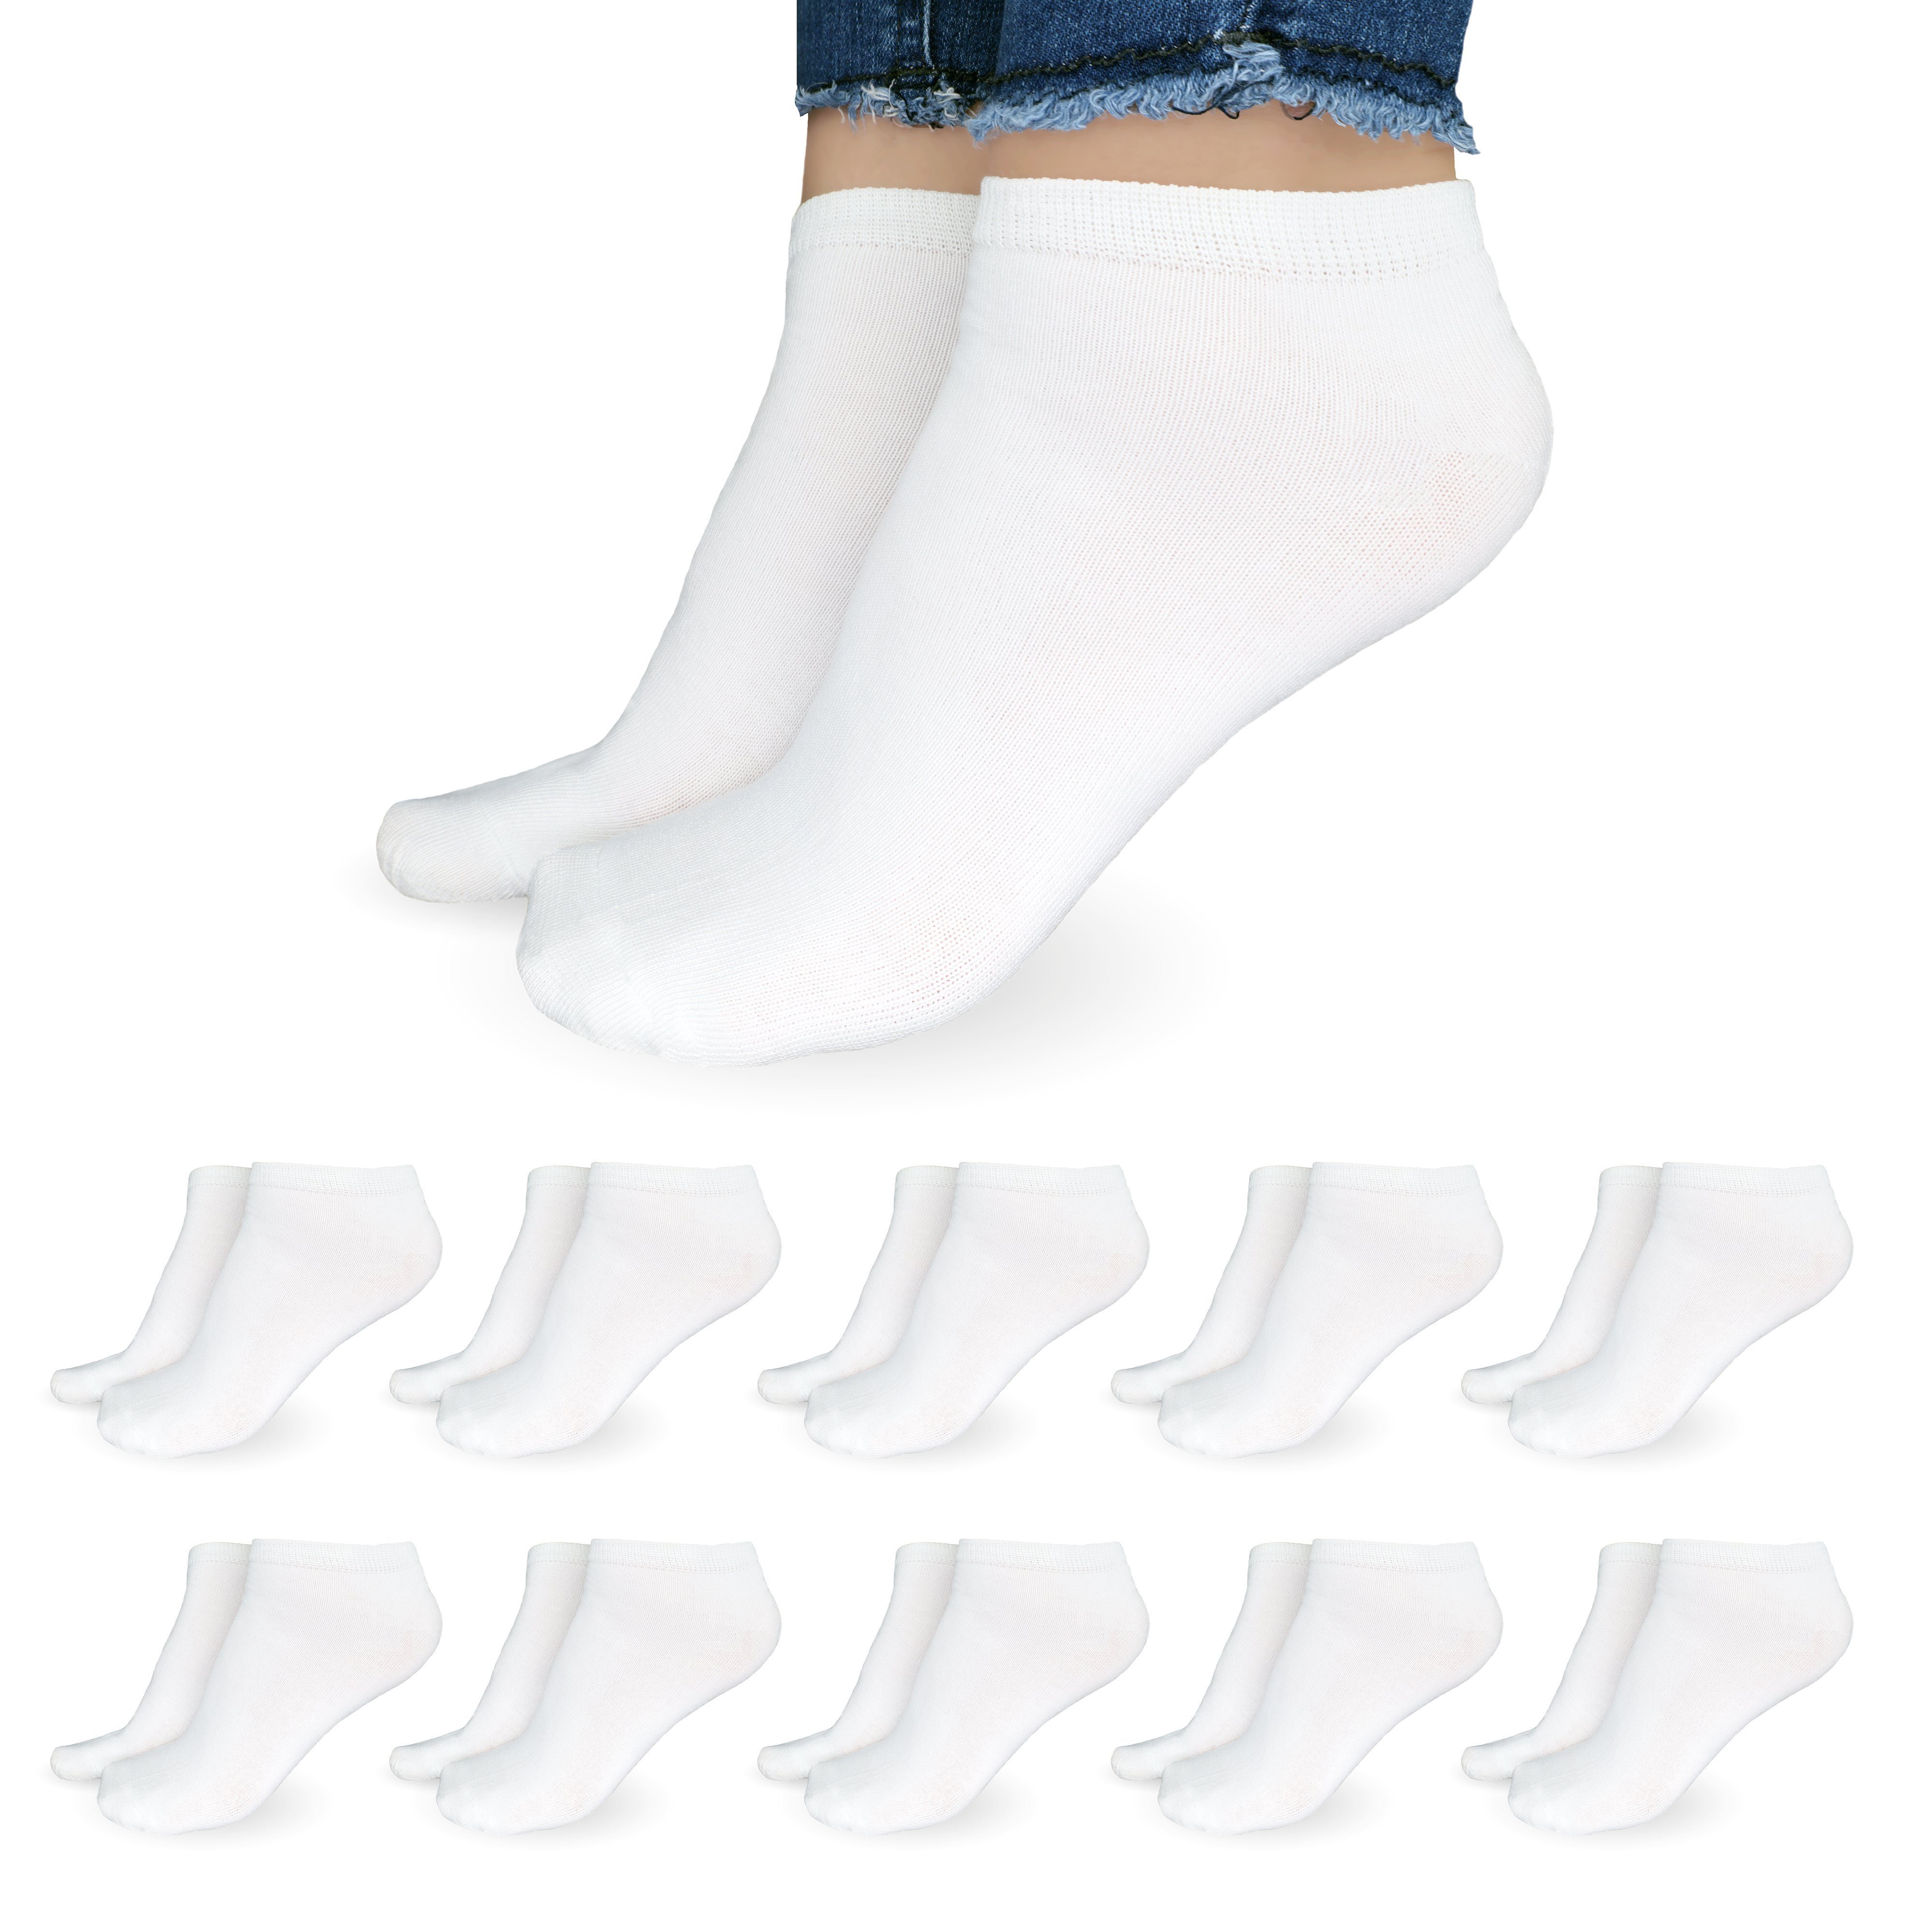 SO.I Freizeitsocken Sneaker Socken Damen & Herren aus Baumwolle (Größen 35-46, 5-20 Paar) atmungsaktive Unisex Socken 10x Weiß